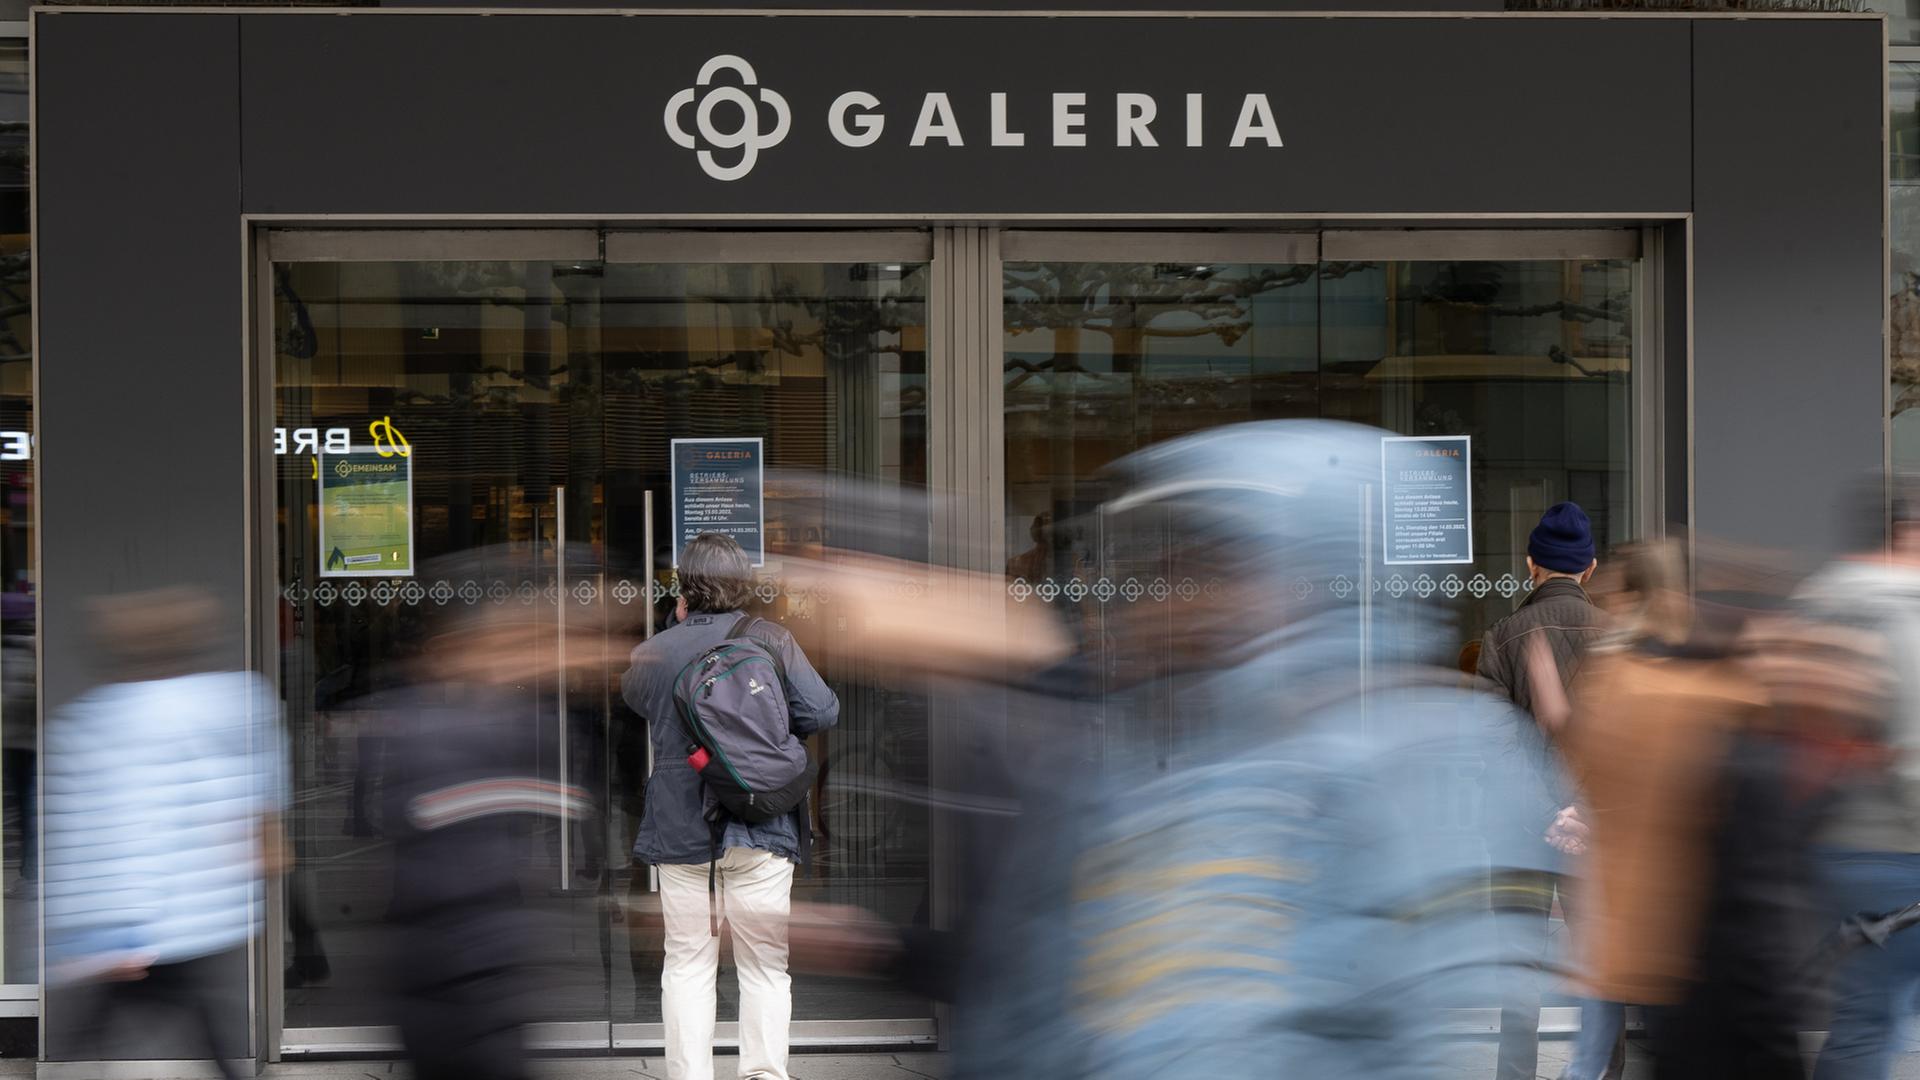 Galeria-Betriebsrätin zu Insolvenz der Signa Holding: "Panik ist noch nicht ausgebrochen"